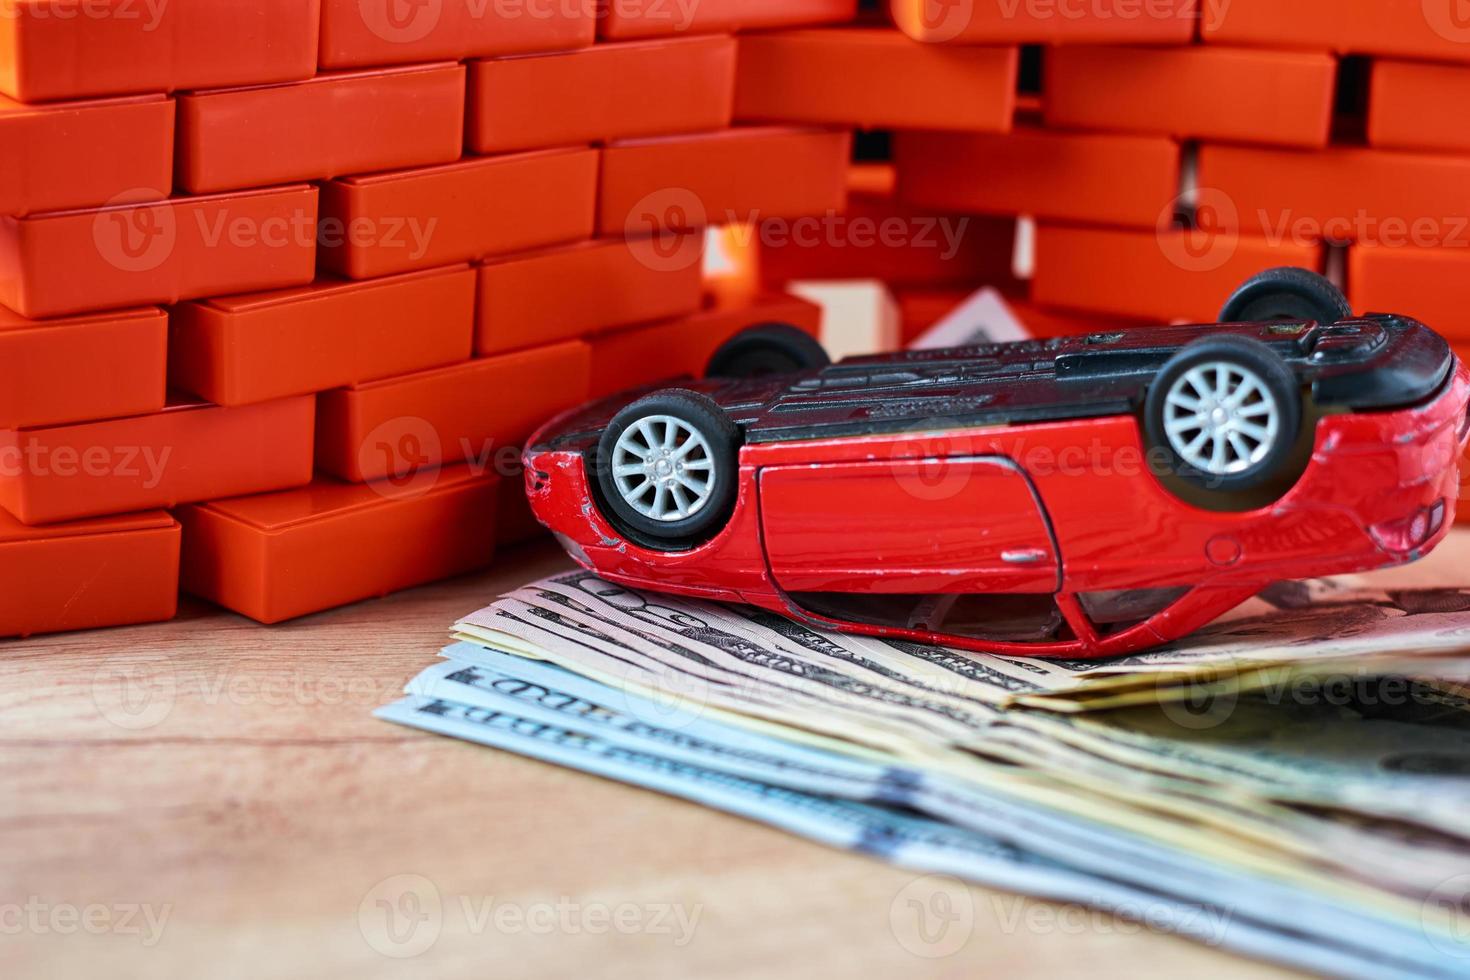 Broken car on a usd banknotes. Car insurance concept photo